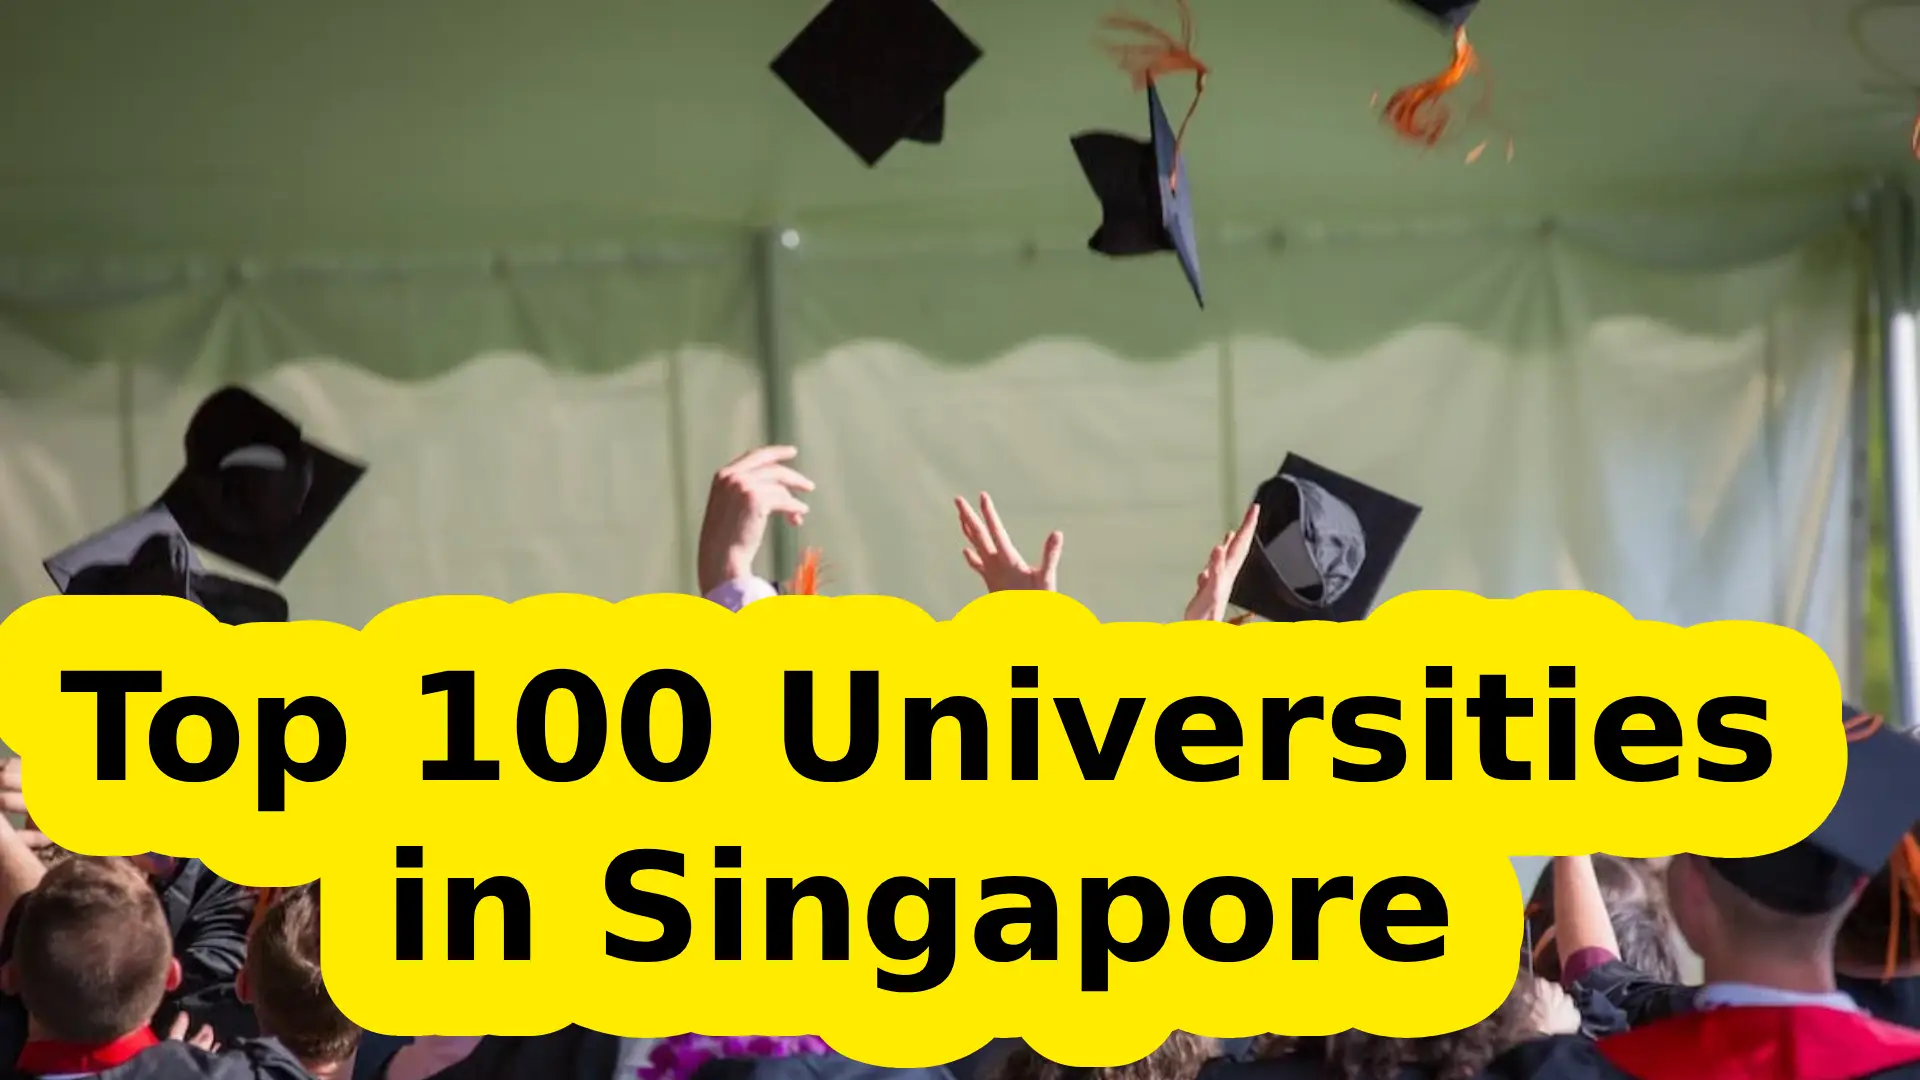 Top 100 Universities in Singapore